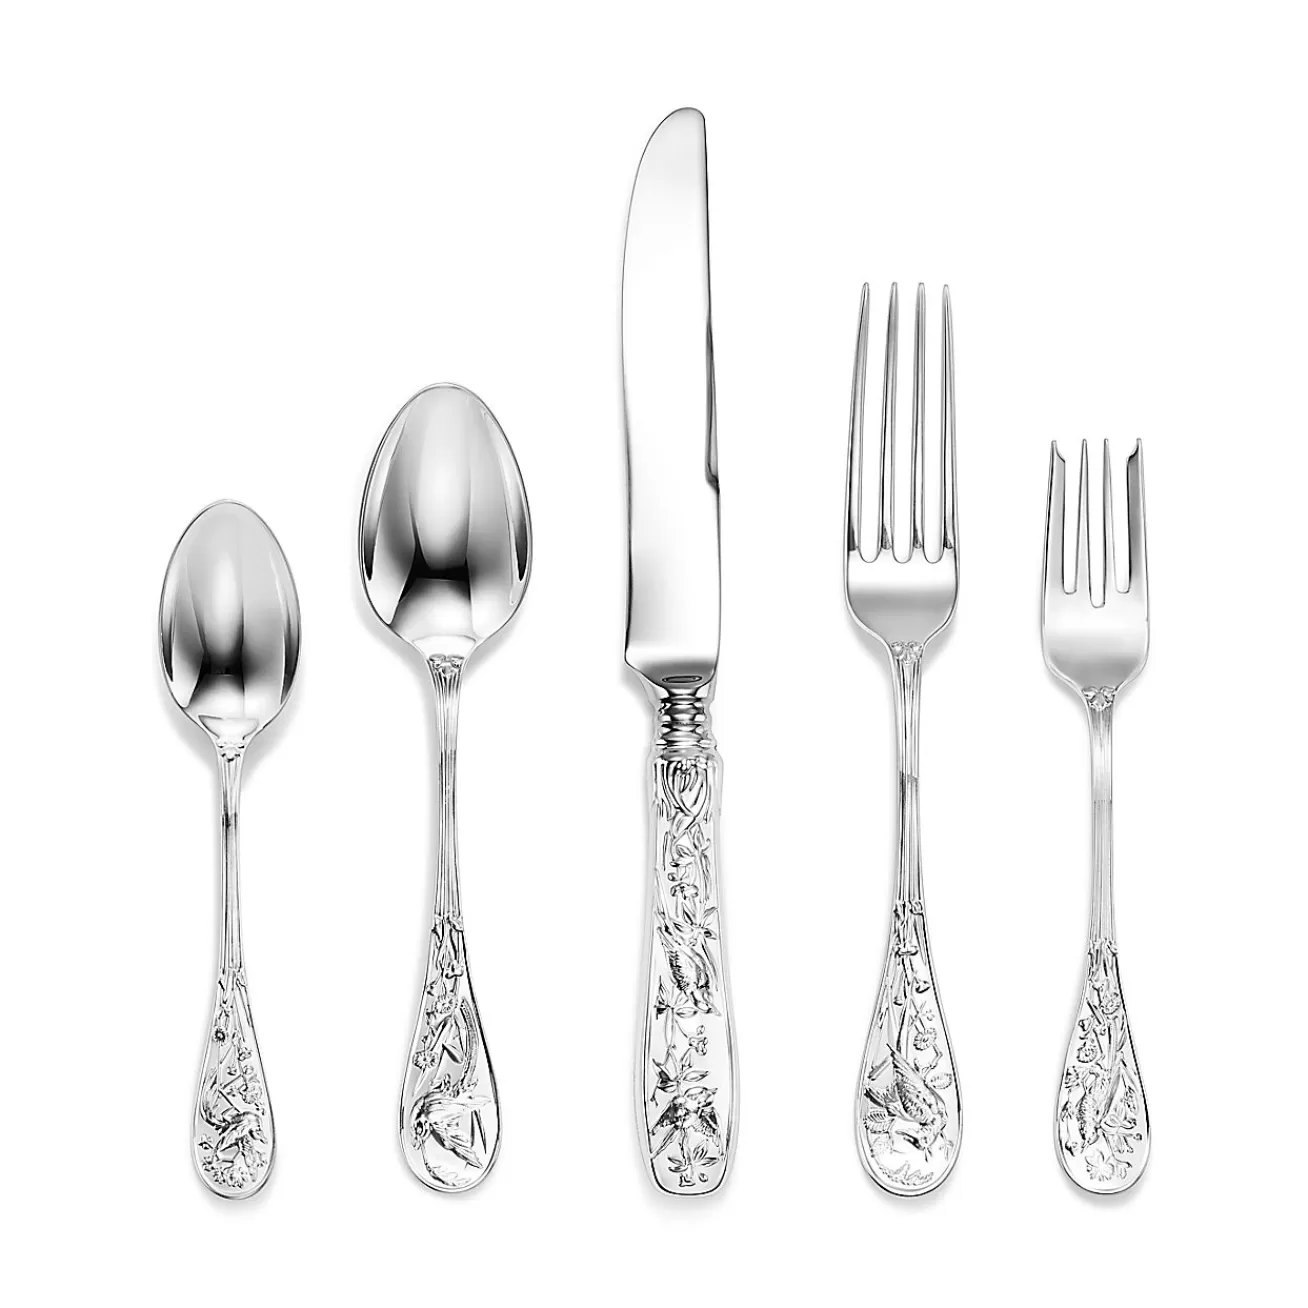 Tiffany & Co. Tiffany Jardin five-piece flatware set in sterling silver. | ^ Tableware